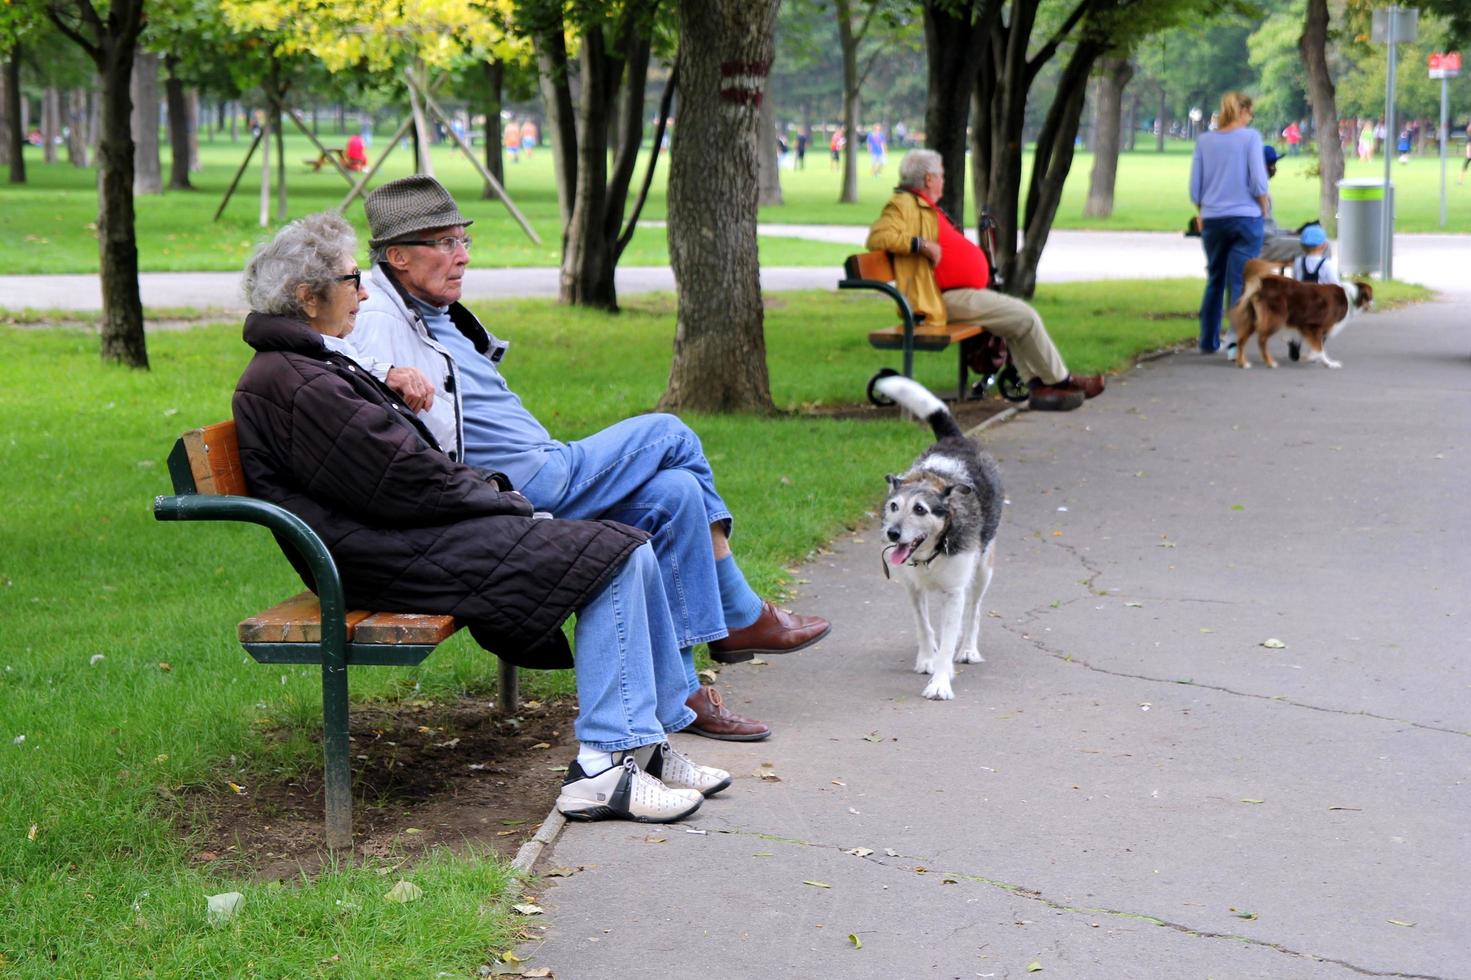 viena, áustria - 31 de agosto de 2014. vista em um parque com idosos sentados em um banco e cachorros passeando. foto